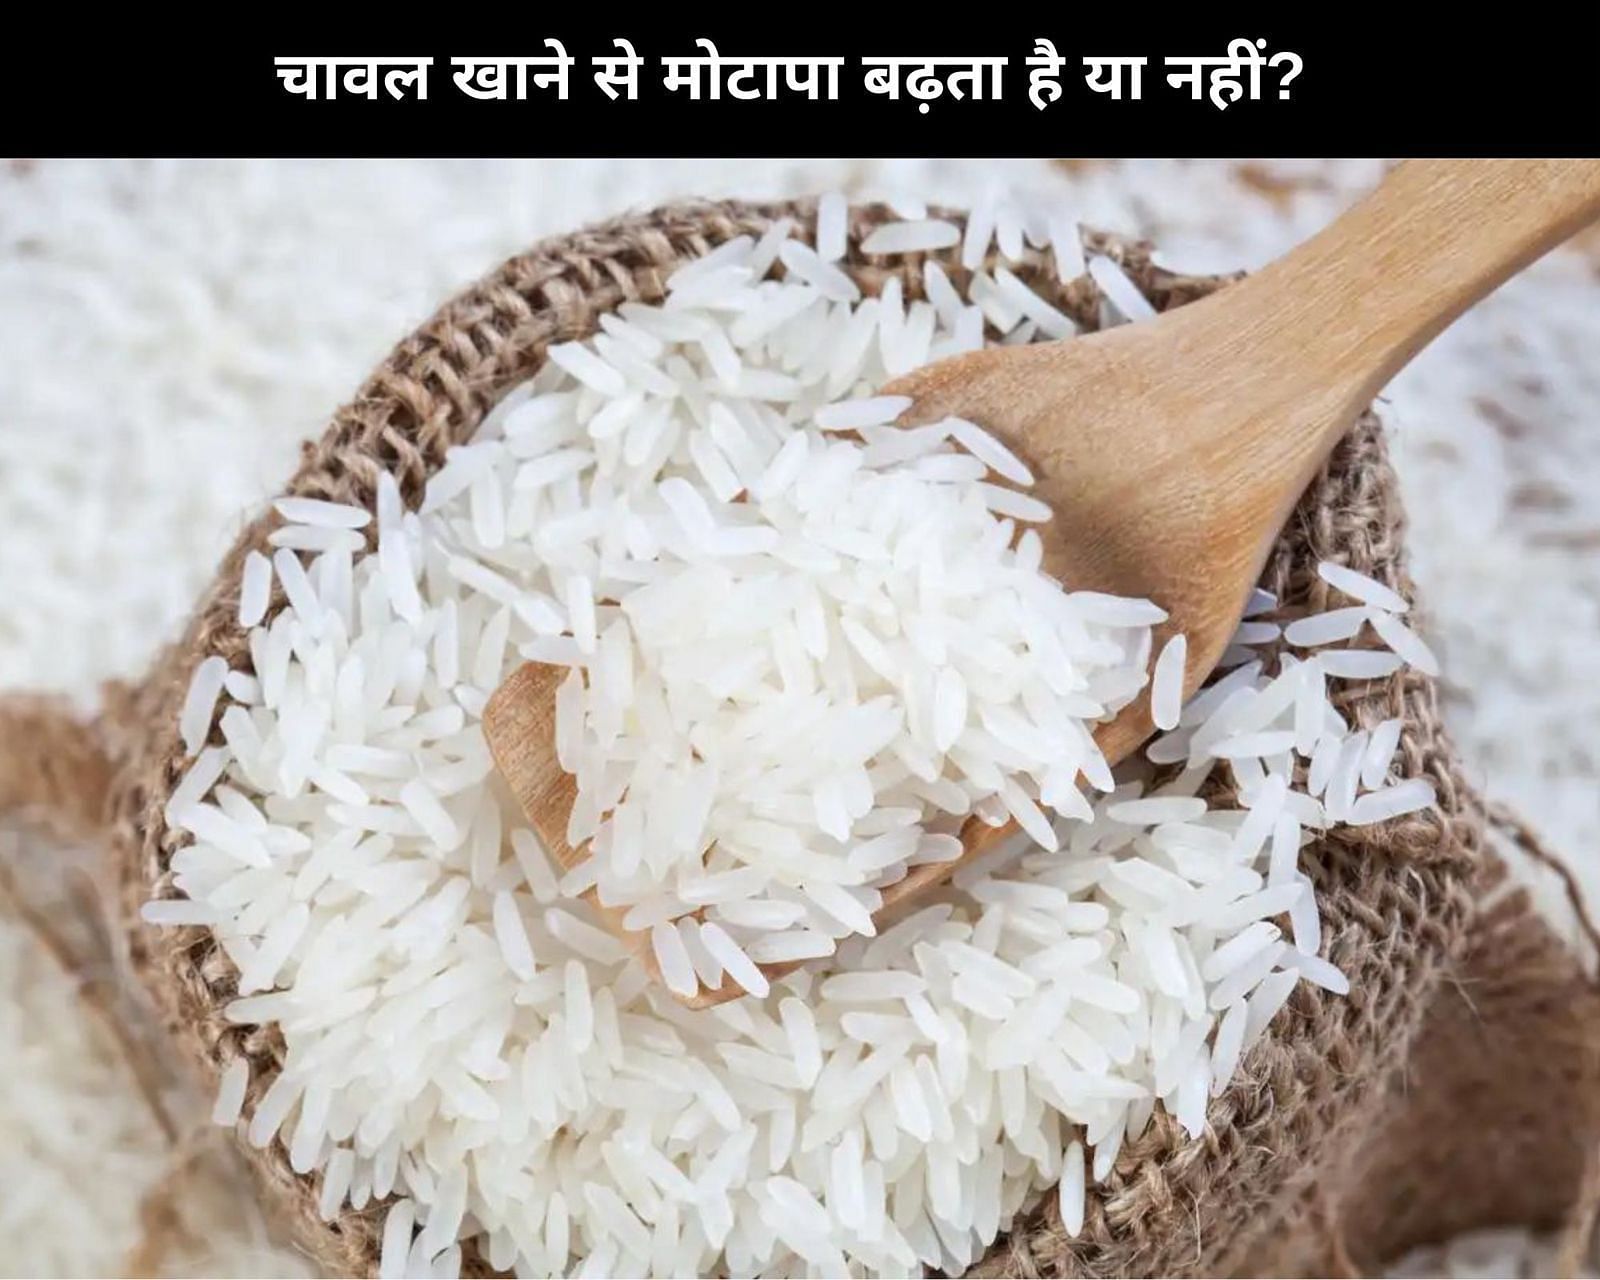 चावल खाने से मोटापा बढ़ता है या नहीं? (फोटो - sportskeedaहिन्दी)